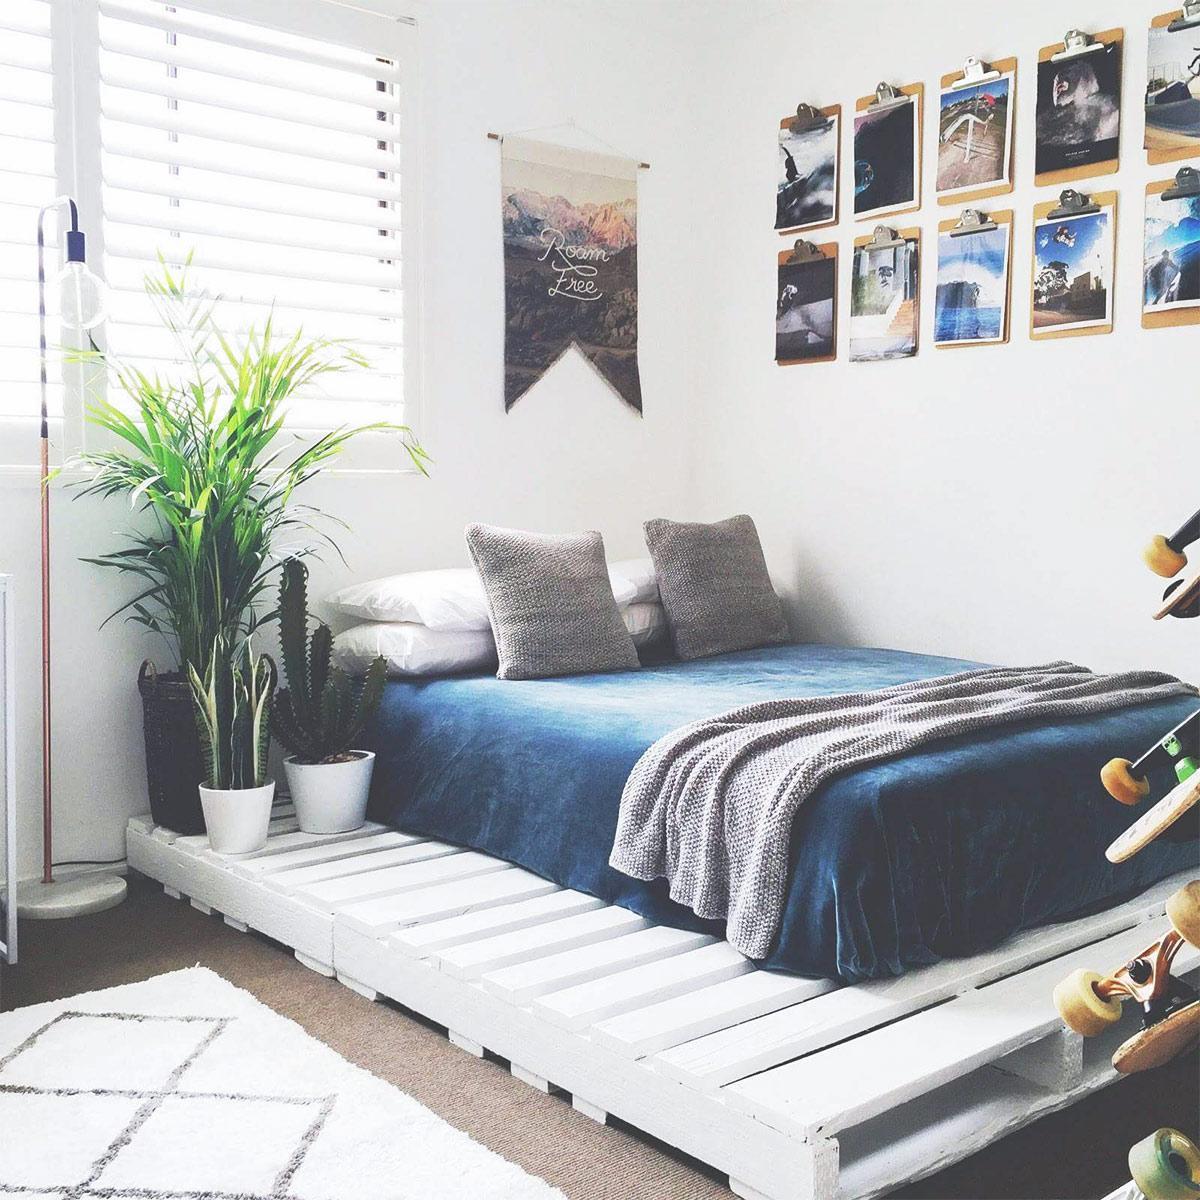 Trang trí phòng ngủ với đồ handmade đơn giản, độc đáo K-Bedding